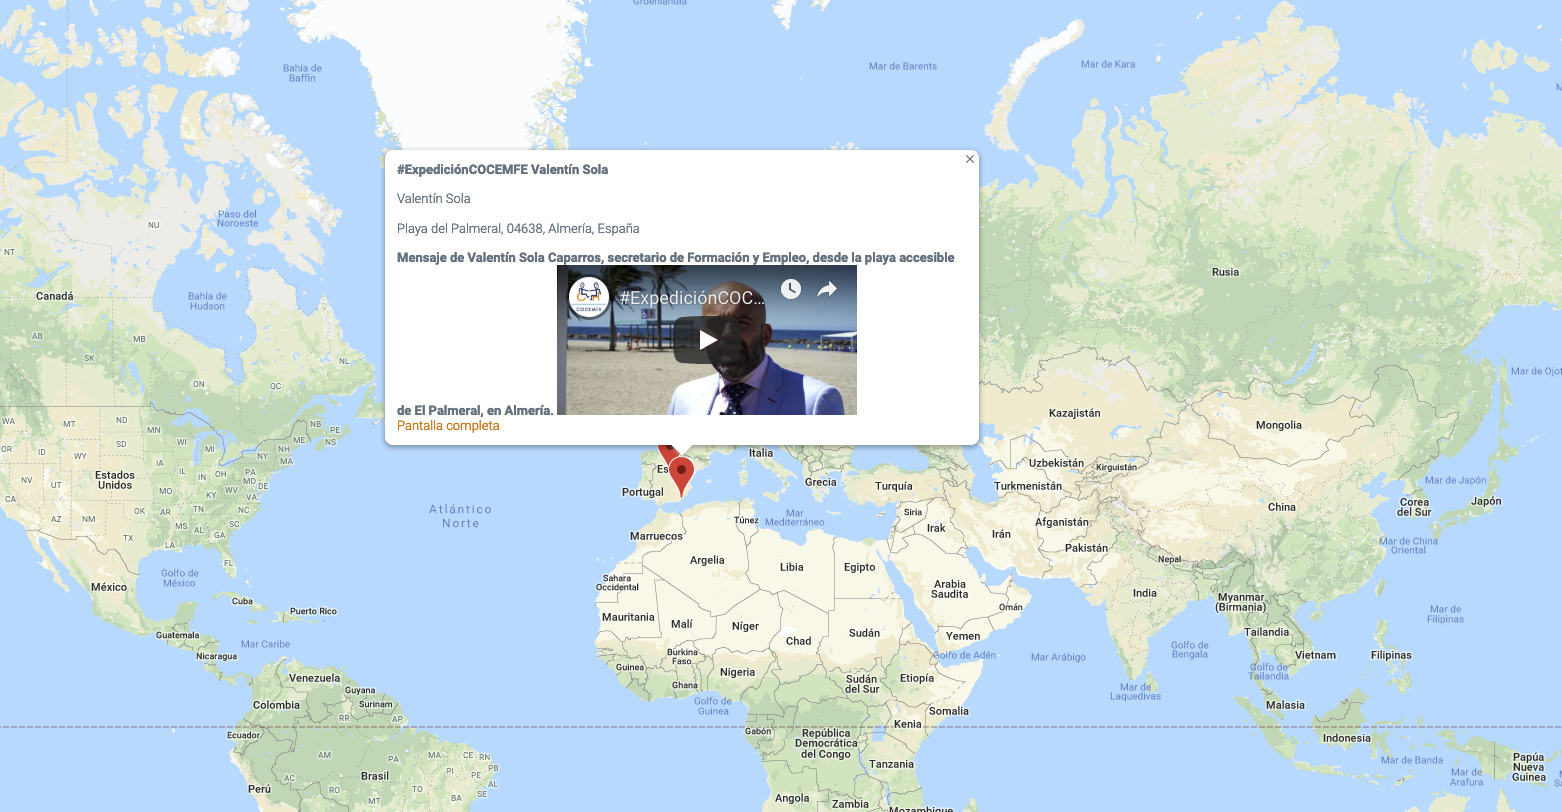 Nace Expedición COCEMFE, el mapa de la inclusión en el mundo